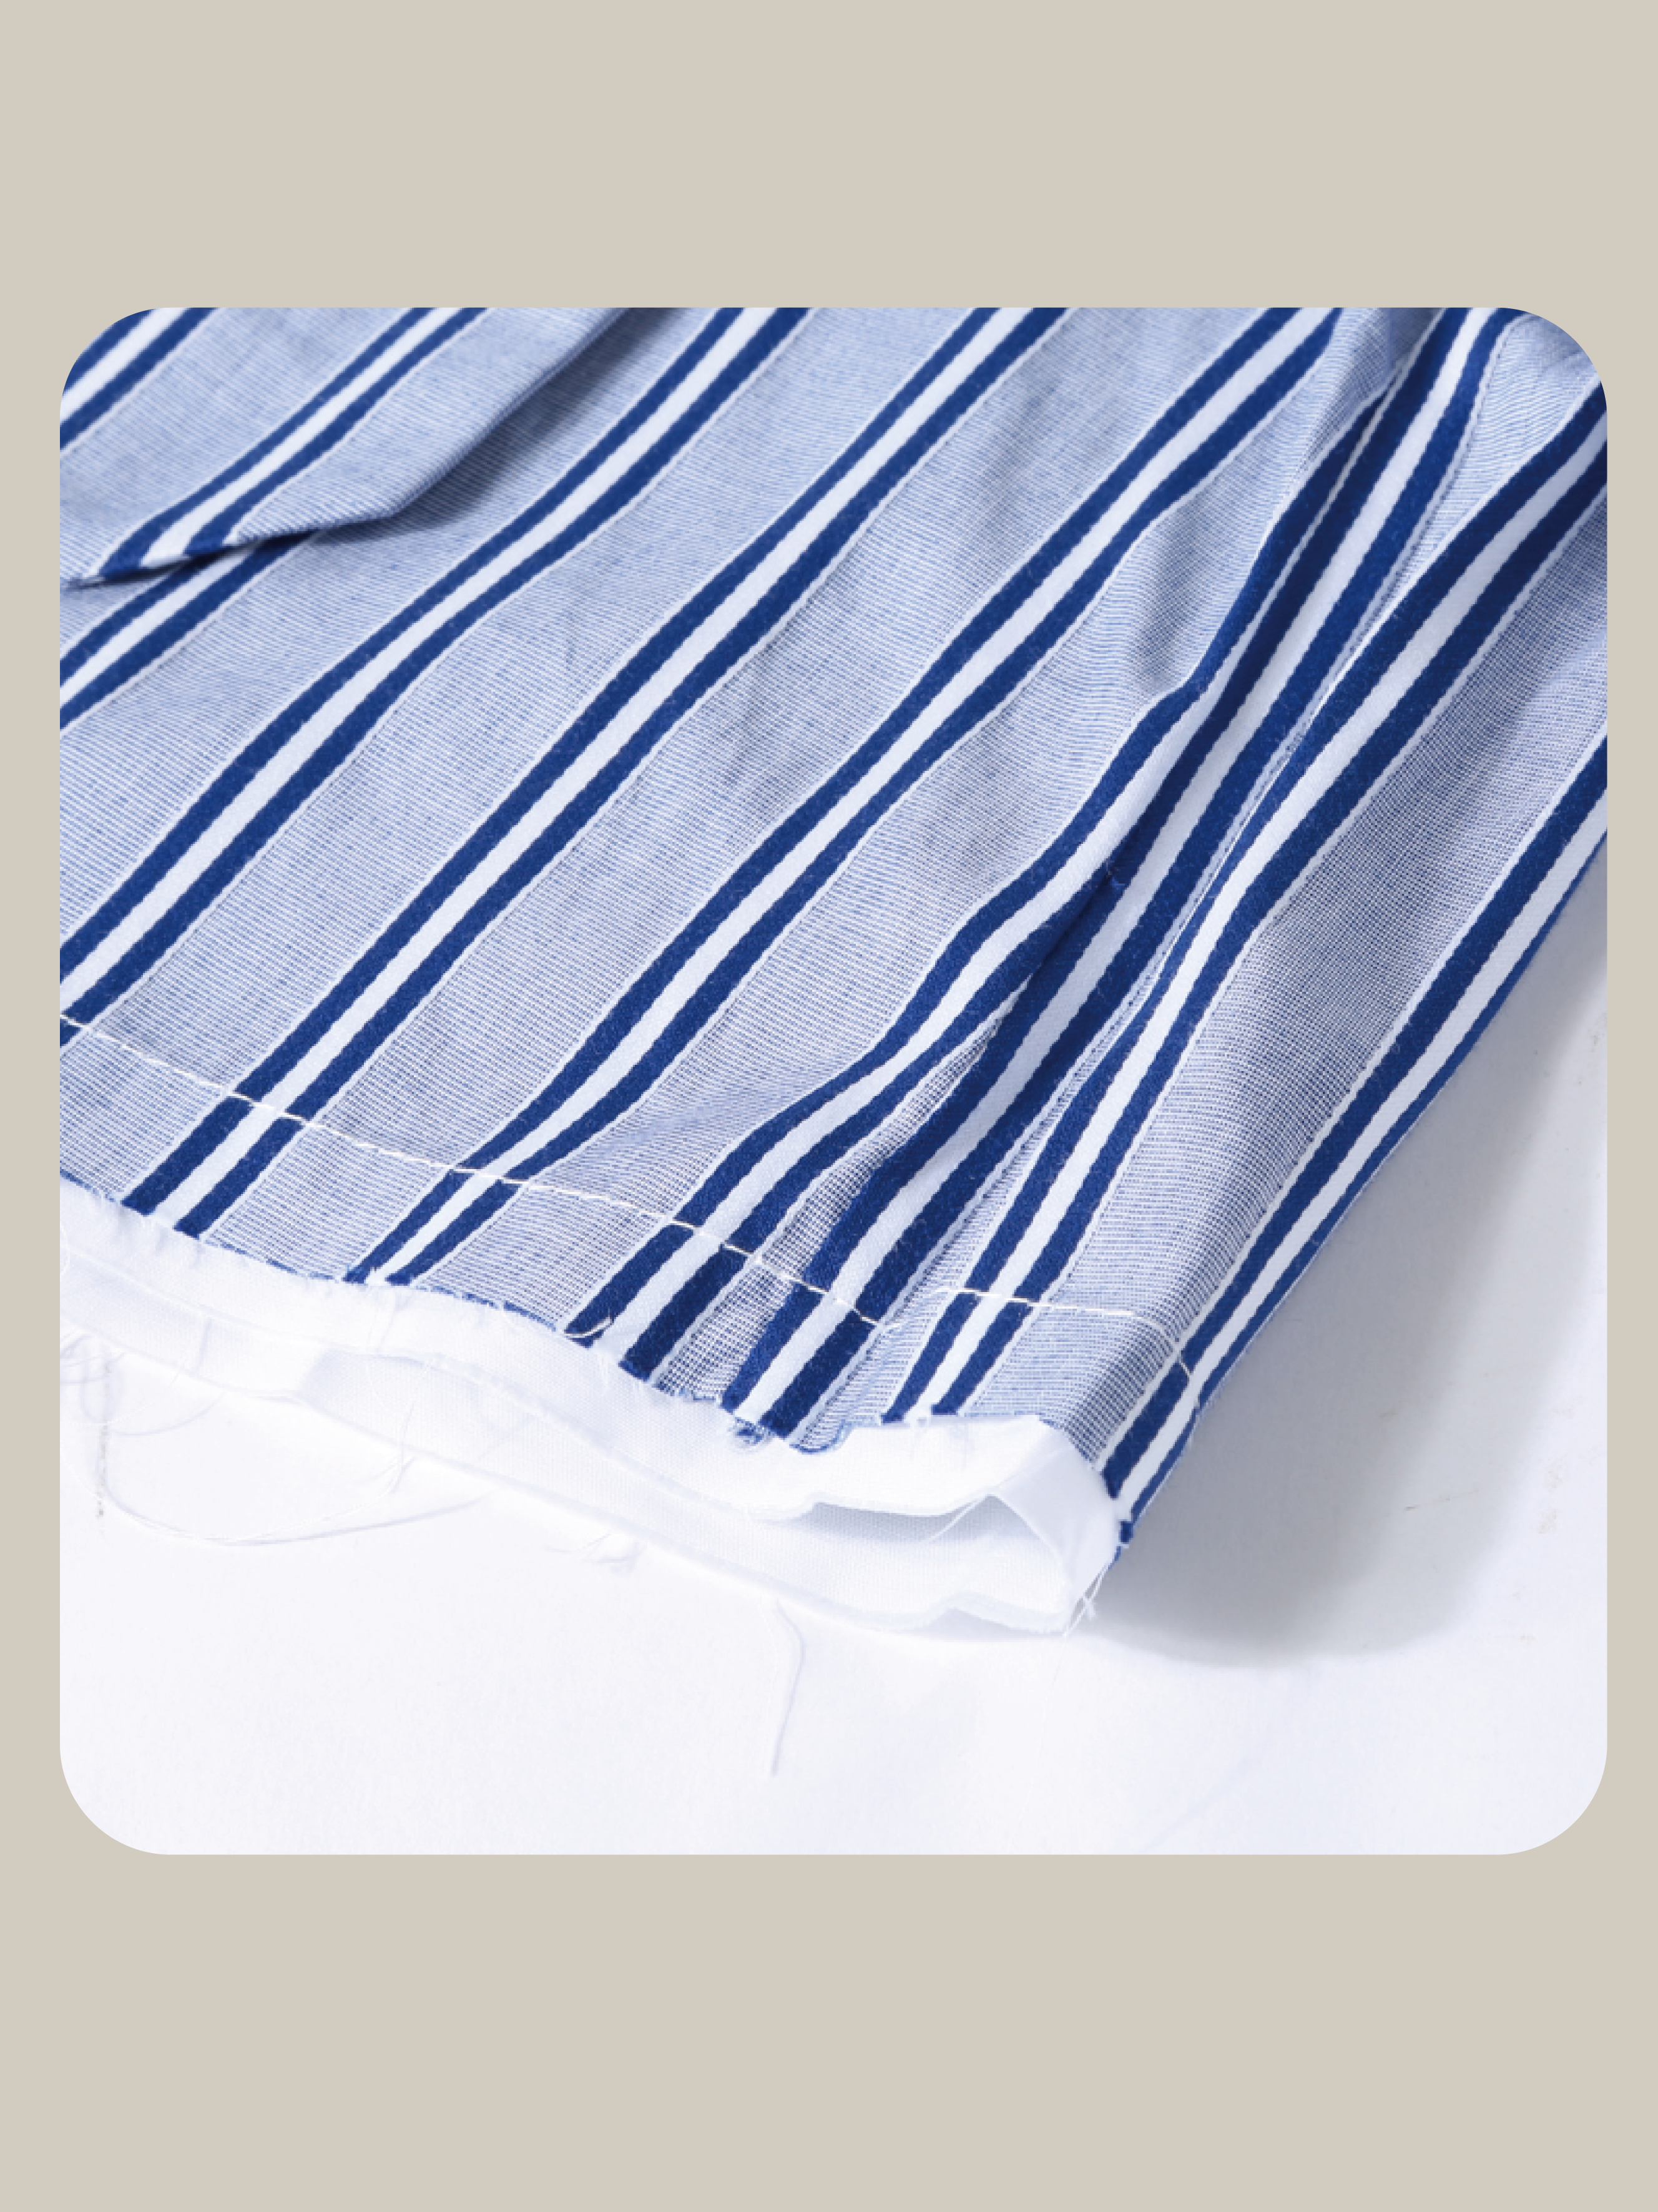 Striped Blue Short Shirt/ストライプブルーショートシャツ